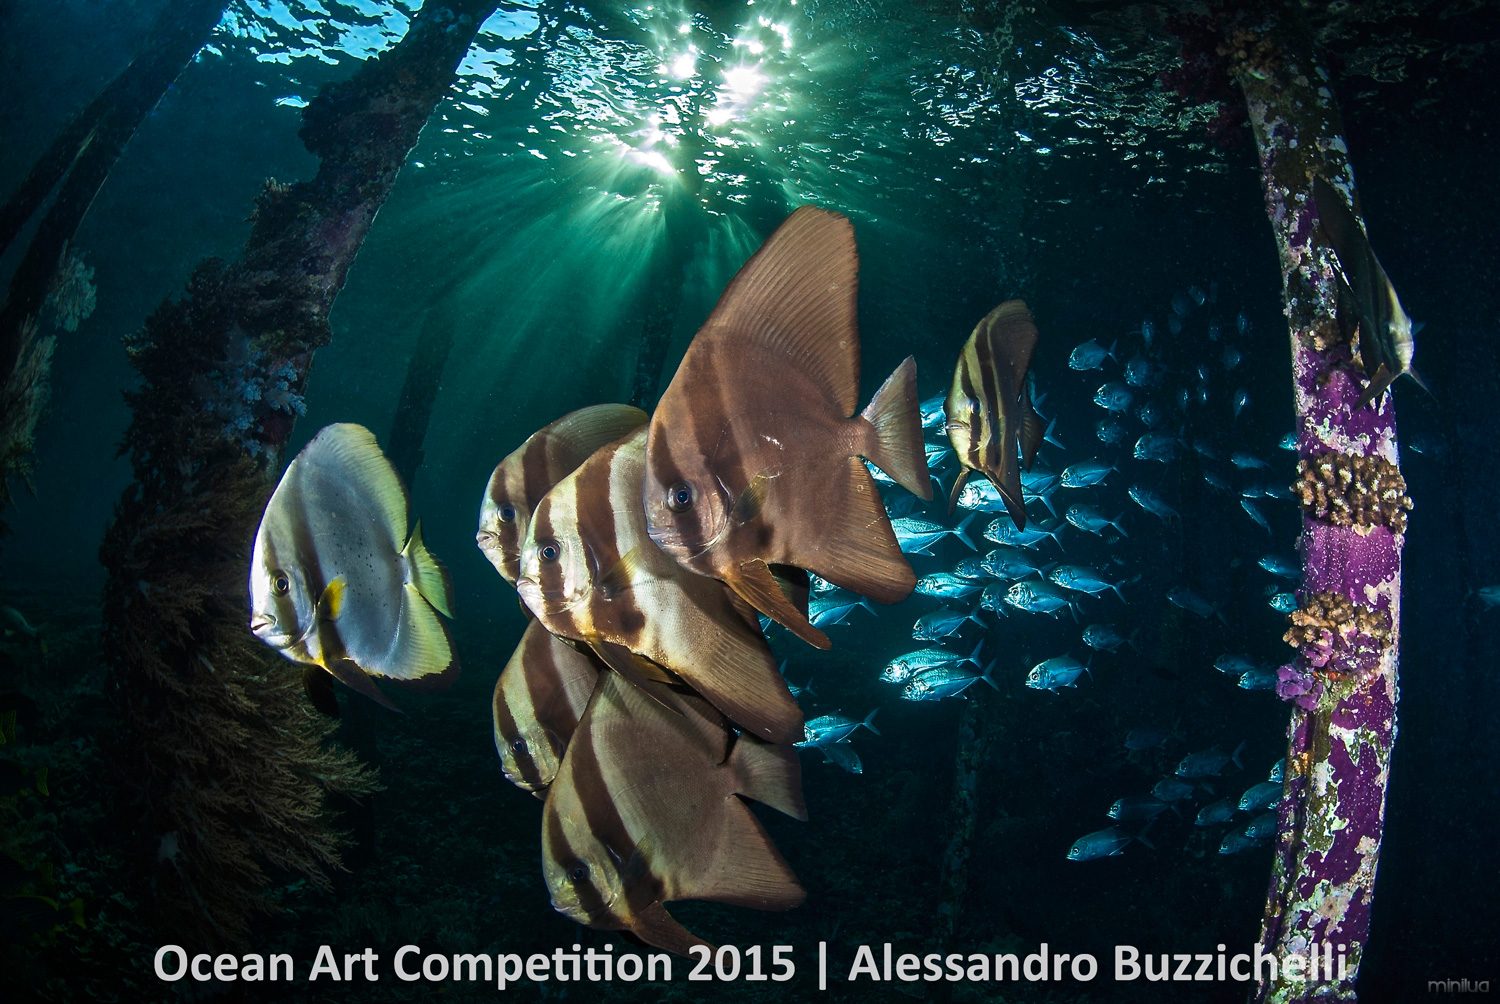 4th-wa-ocean-art-2015-alessandro-buzzichelli-1500